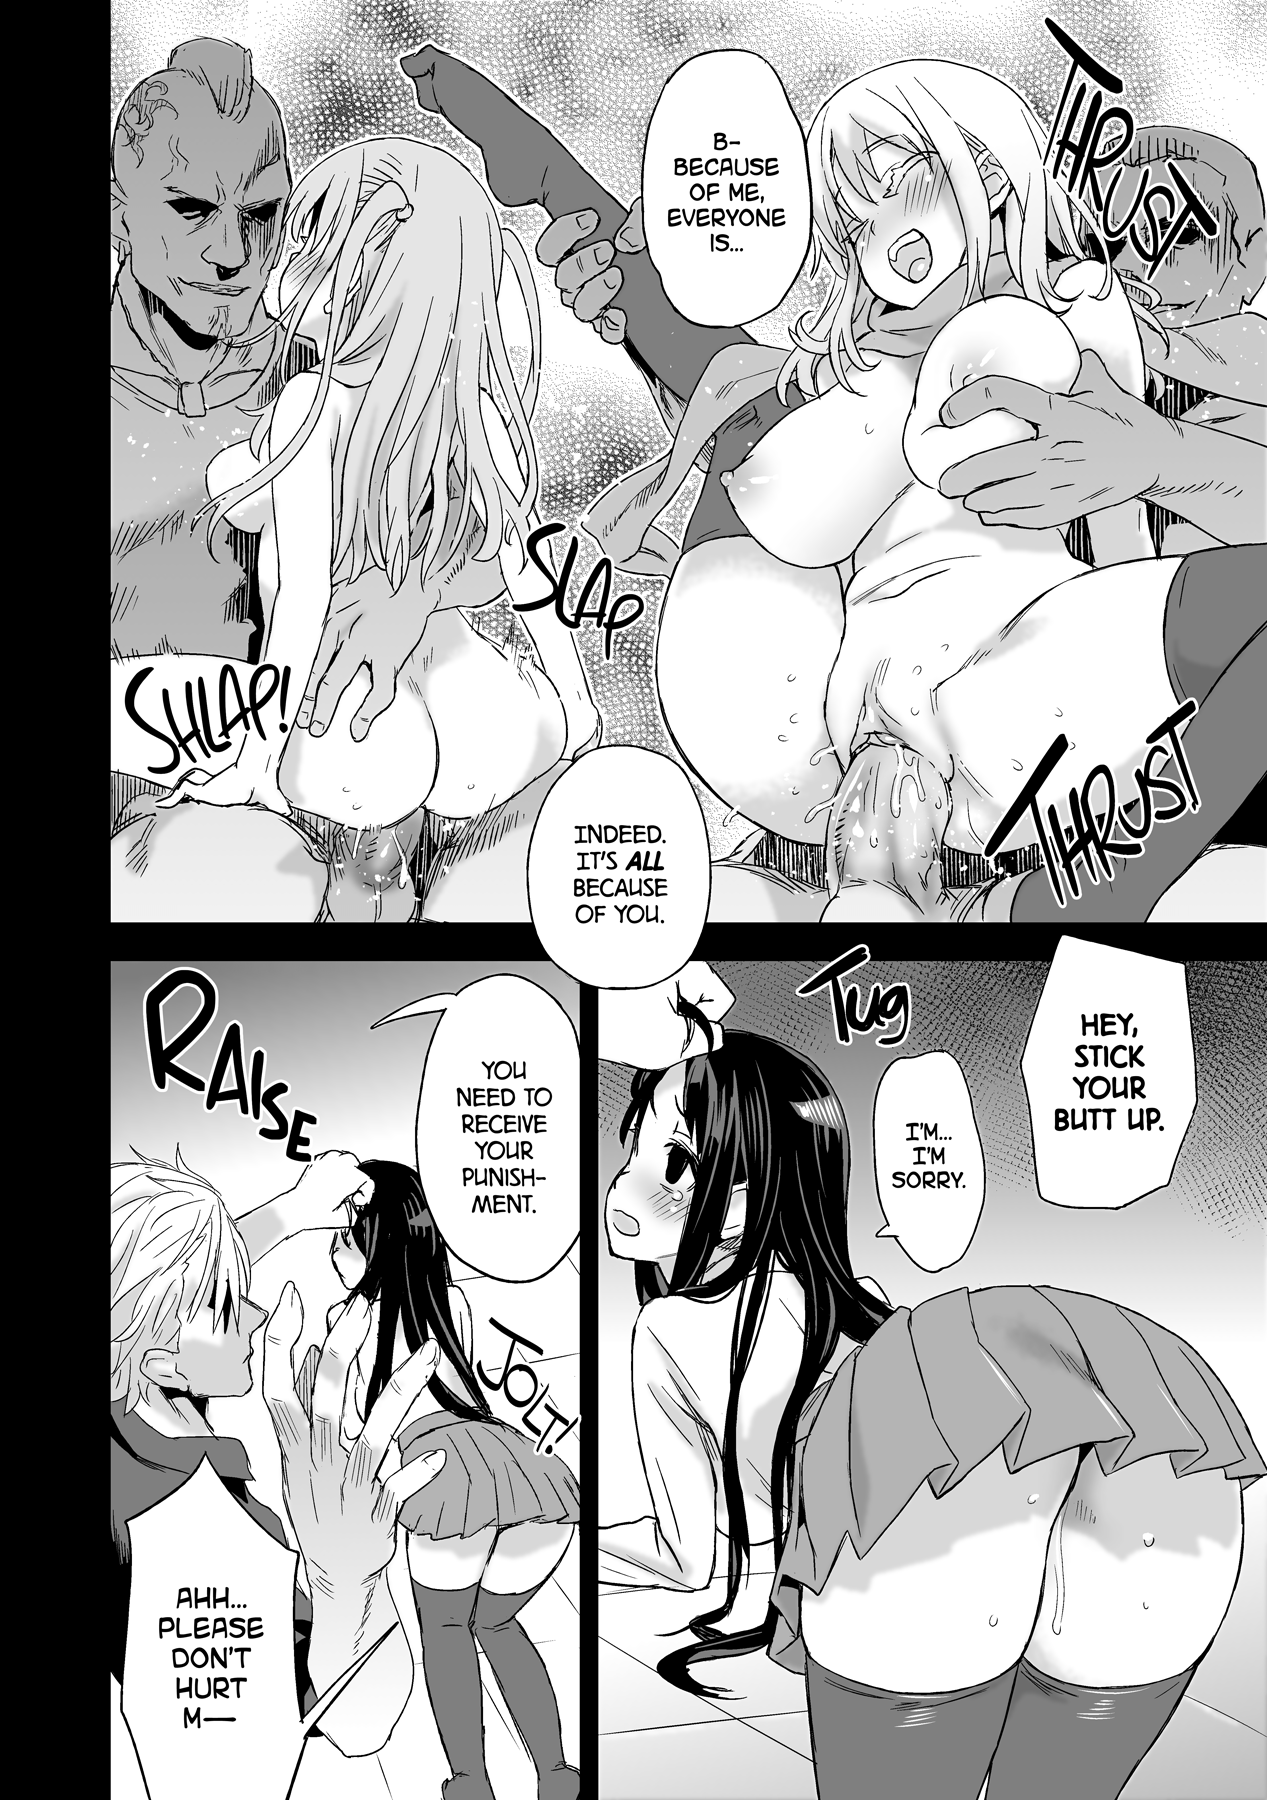 Victim Girls 13 - DRAGON SLAYER hentai manga picture 24